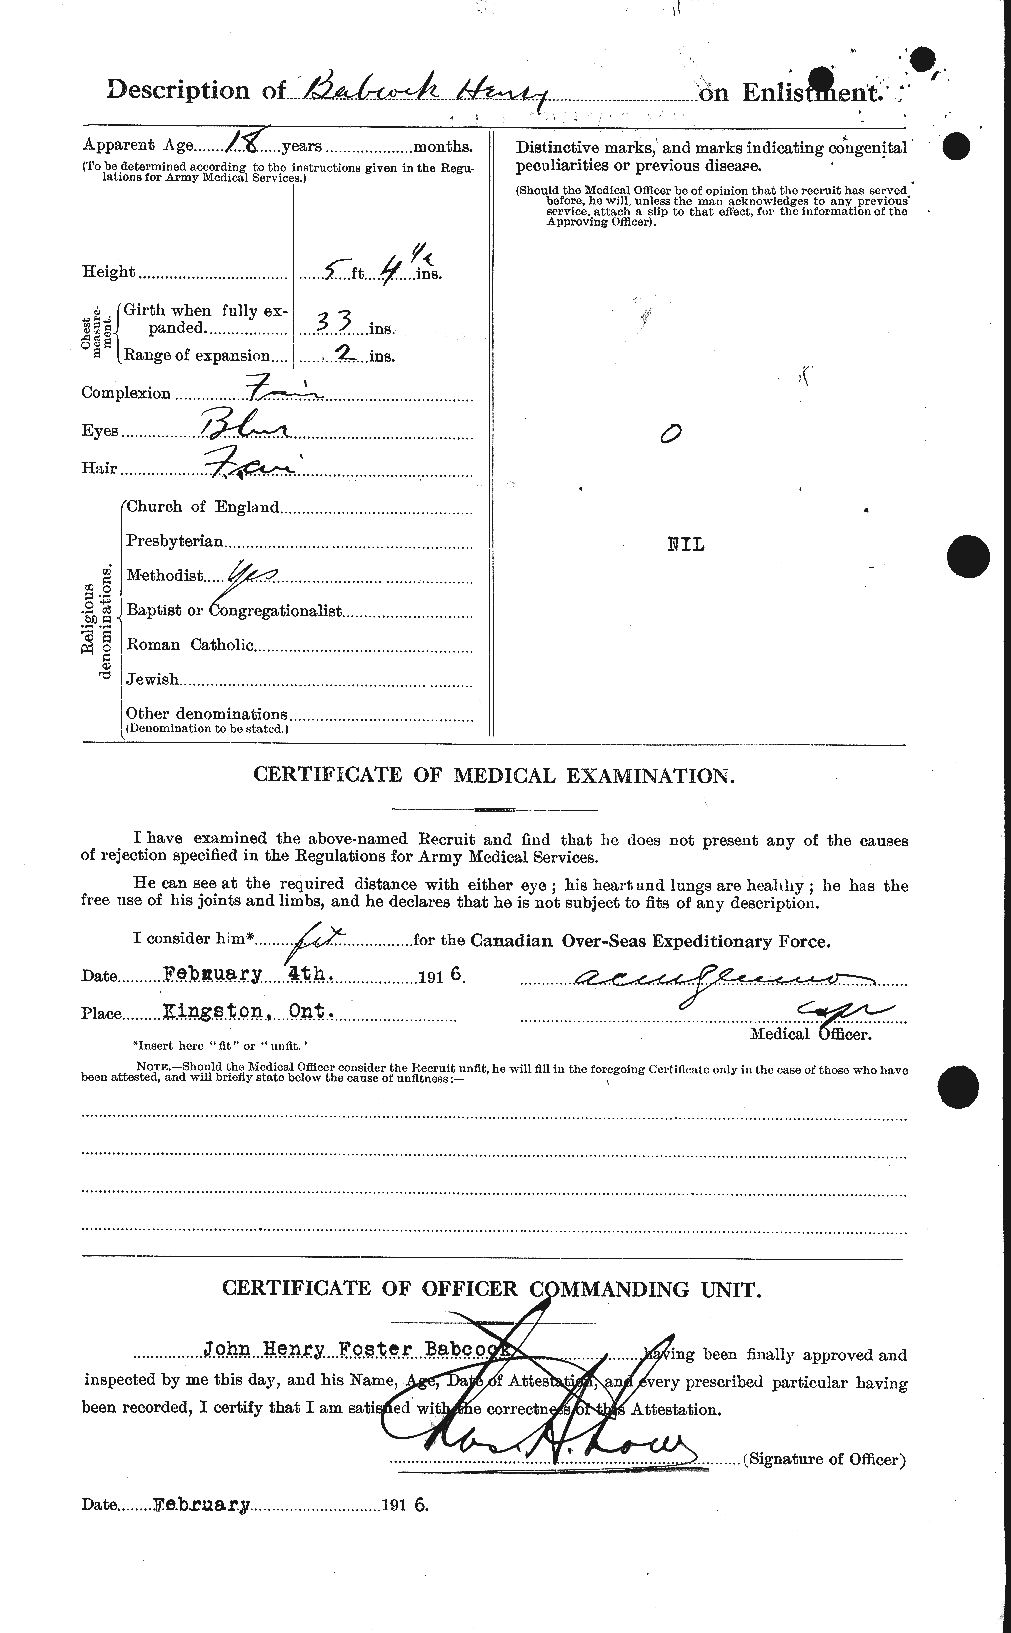 Dossiers du Personnel de la Première Guerre mondiale - CEC 218225b